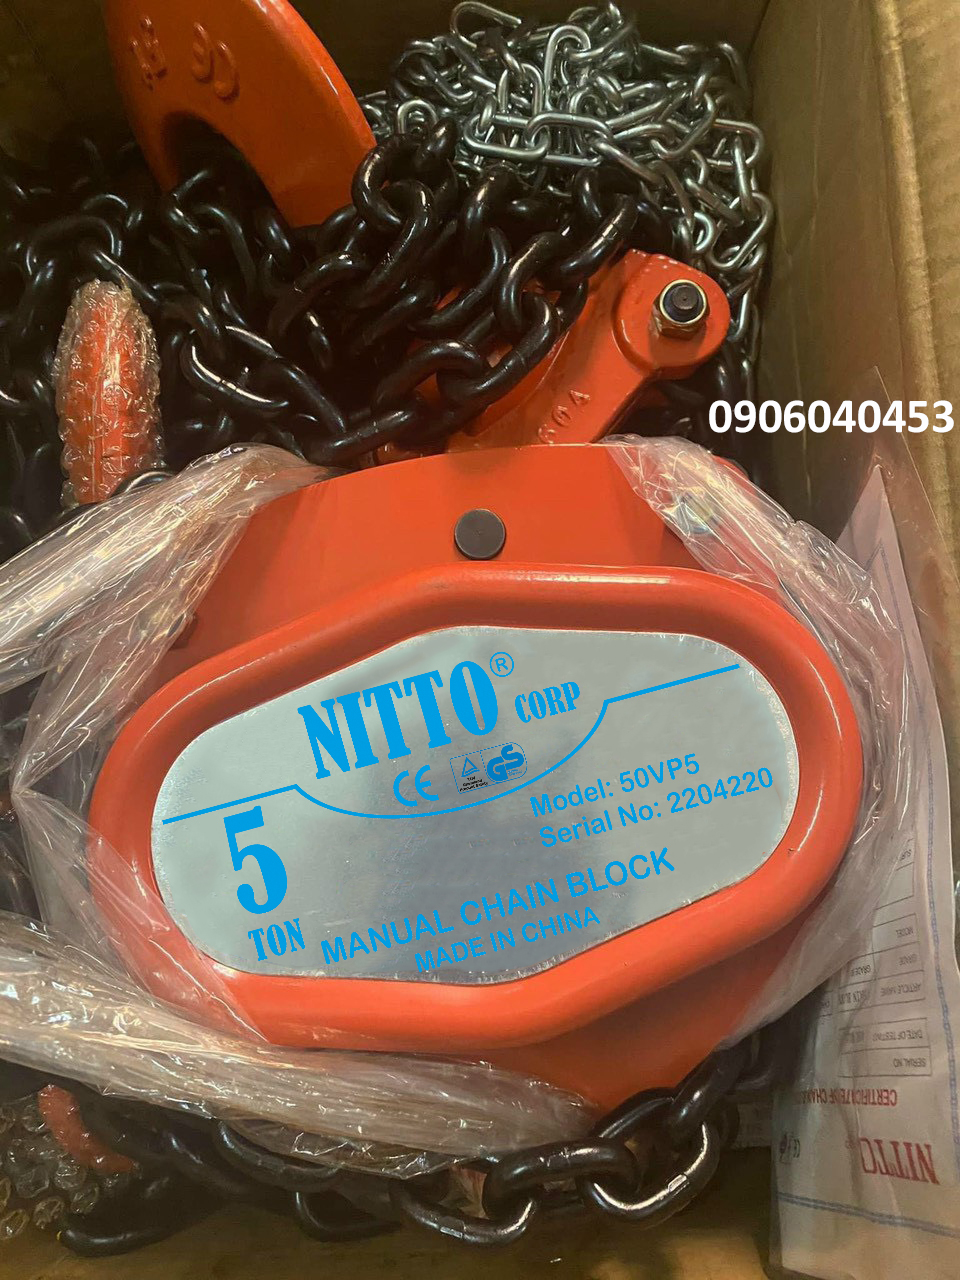 Pa lăng kéo tay Nitto 5 tấn 50VP5 / 50VP5 Nitto Chain Block